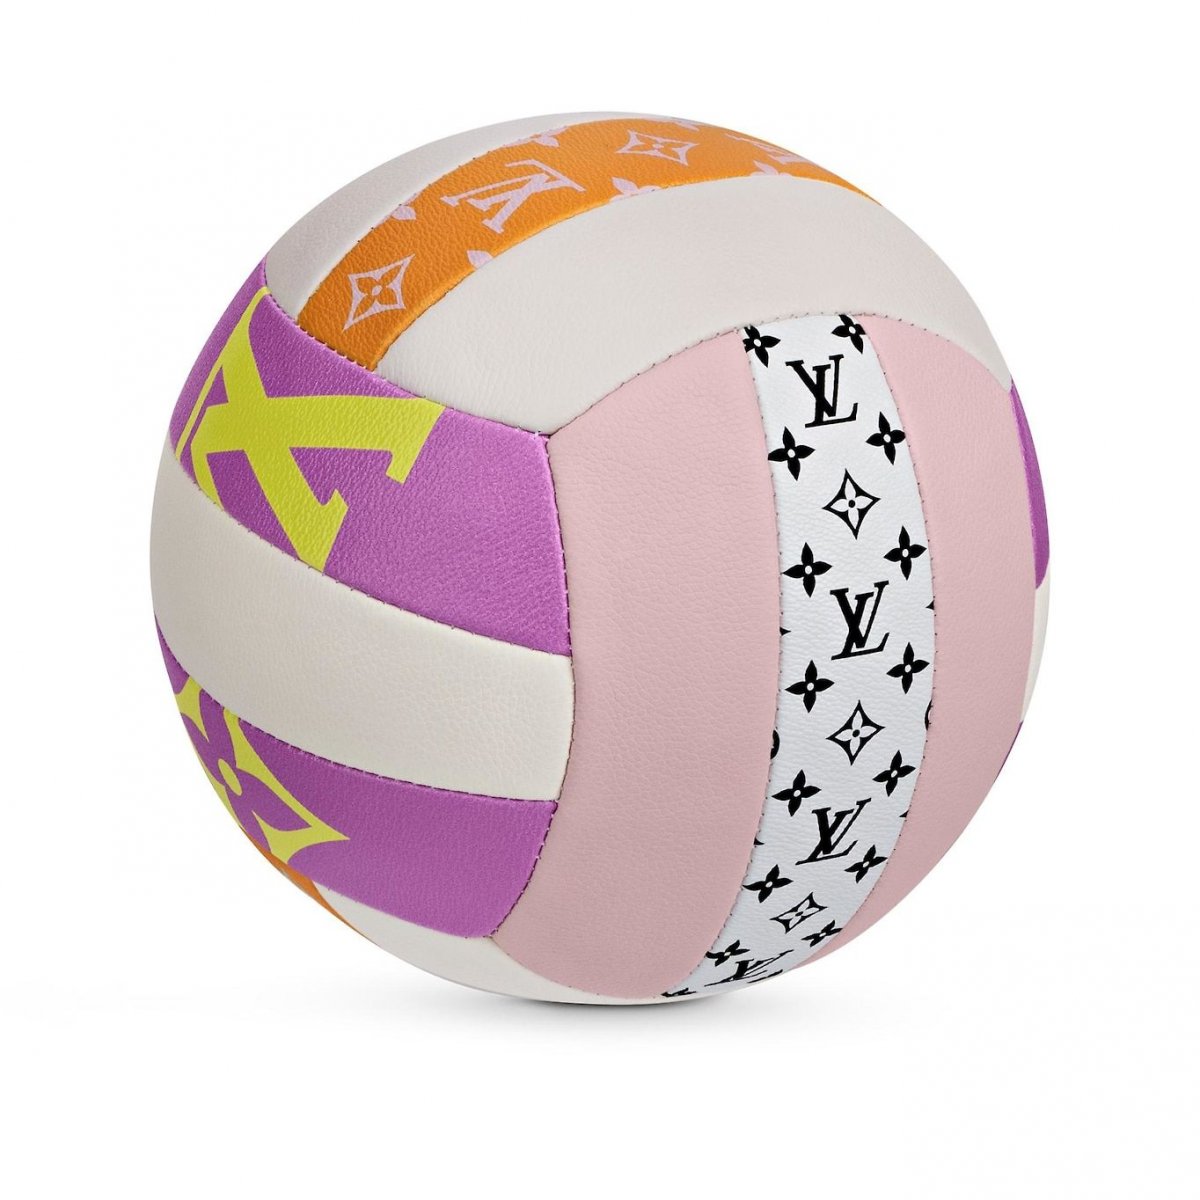 Сумка баскетбольный мяч розовая Луи витон